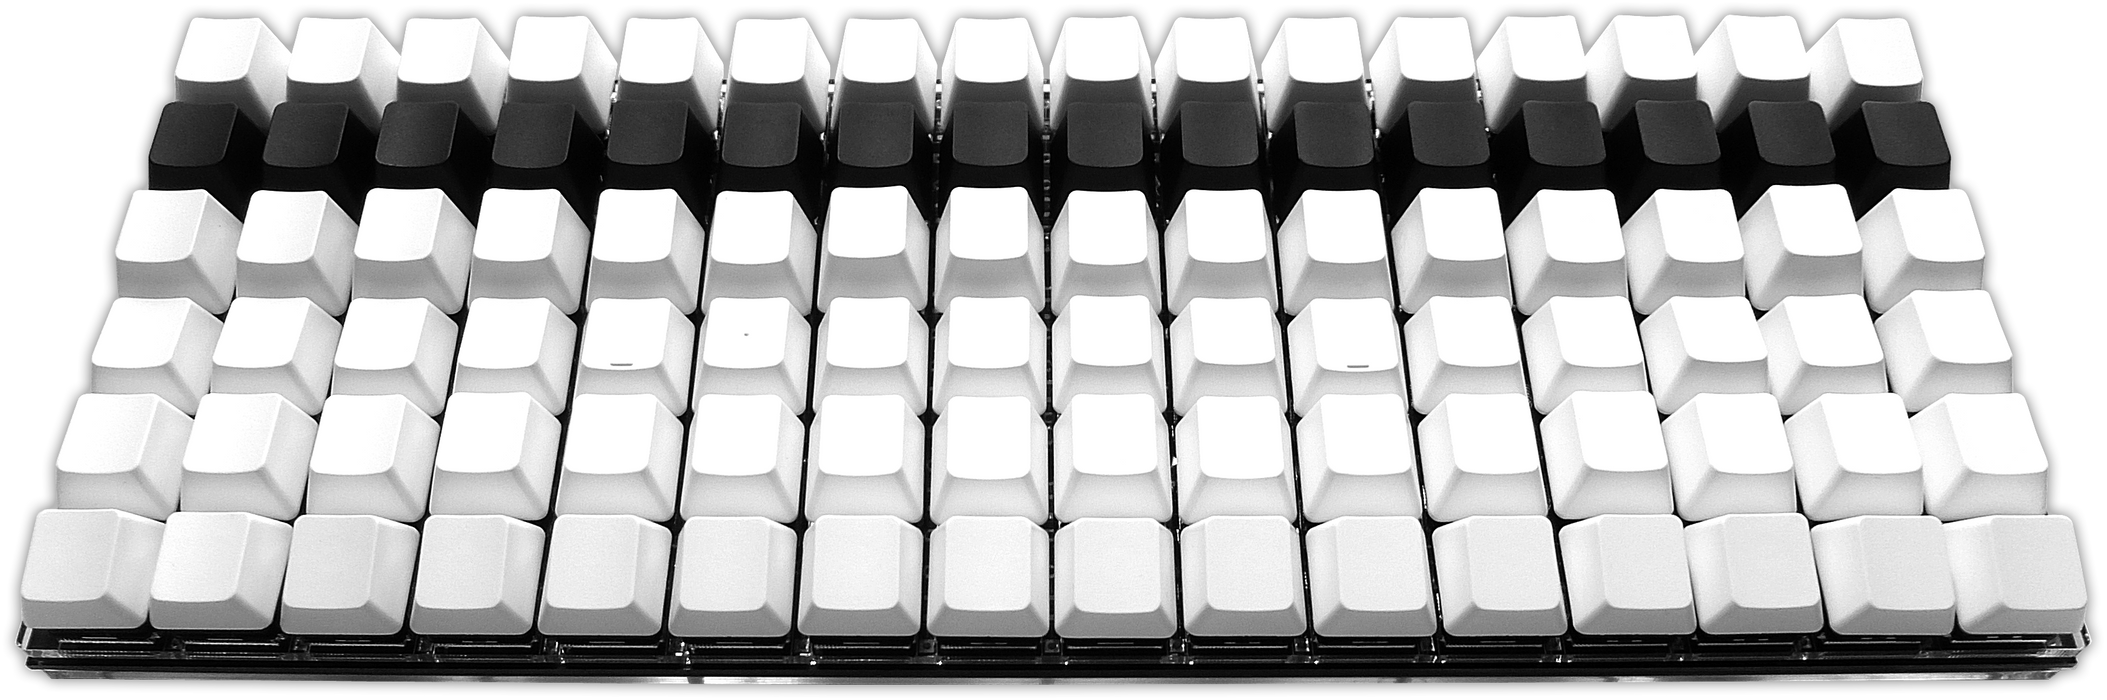 ADKB96 96 键 BTO 自制键盘套件 ADKB96 